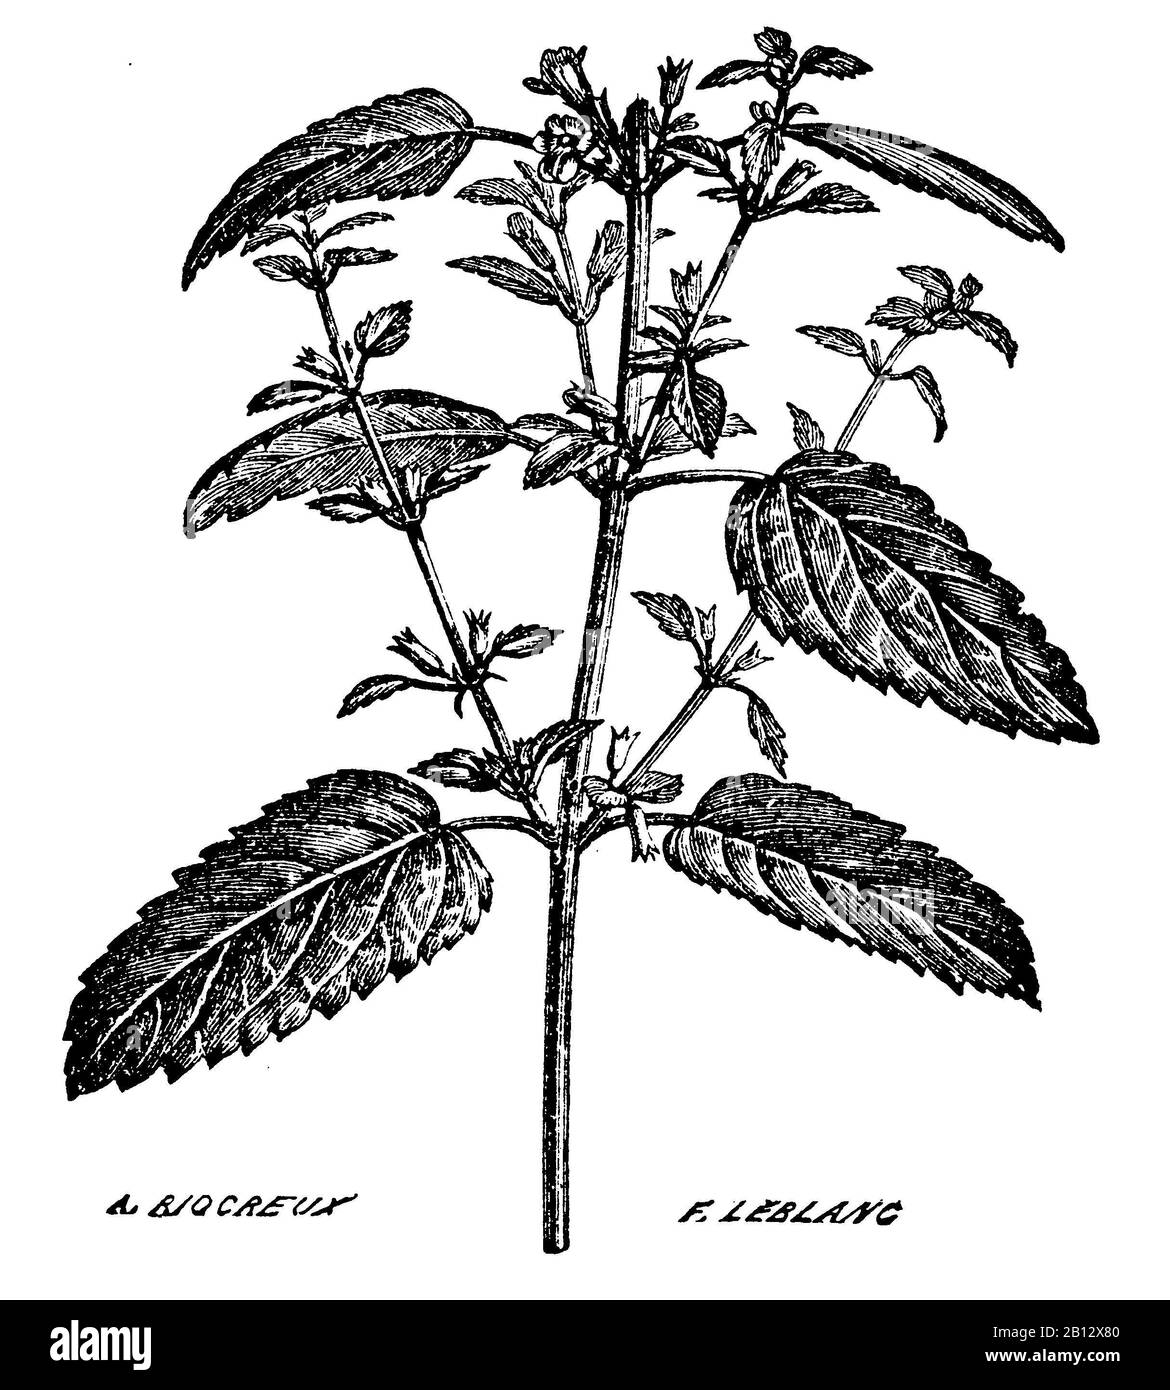 Baumes de citron, Melissa officinalis, Melisse, mélisse, A. Riocreux F. Leblanc (livre de santé, 1887) Banque D'Images